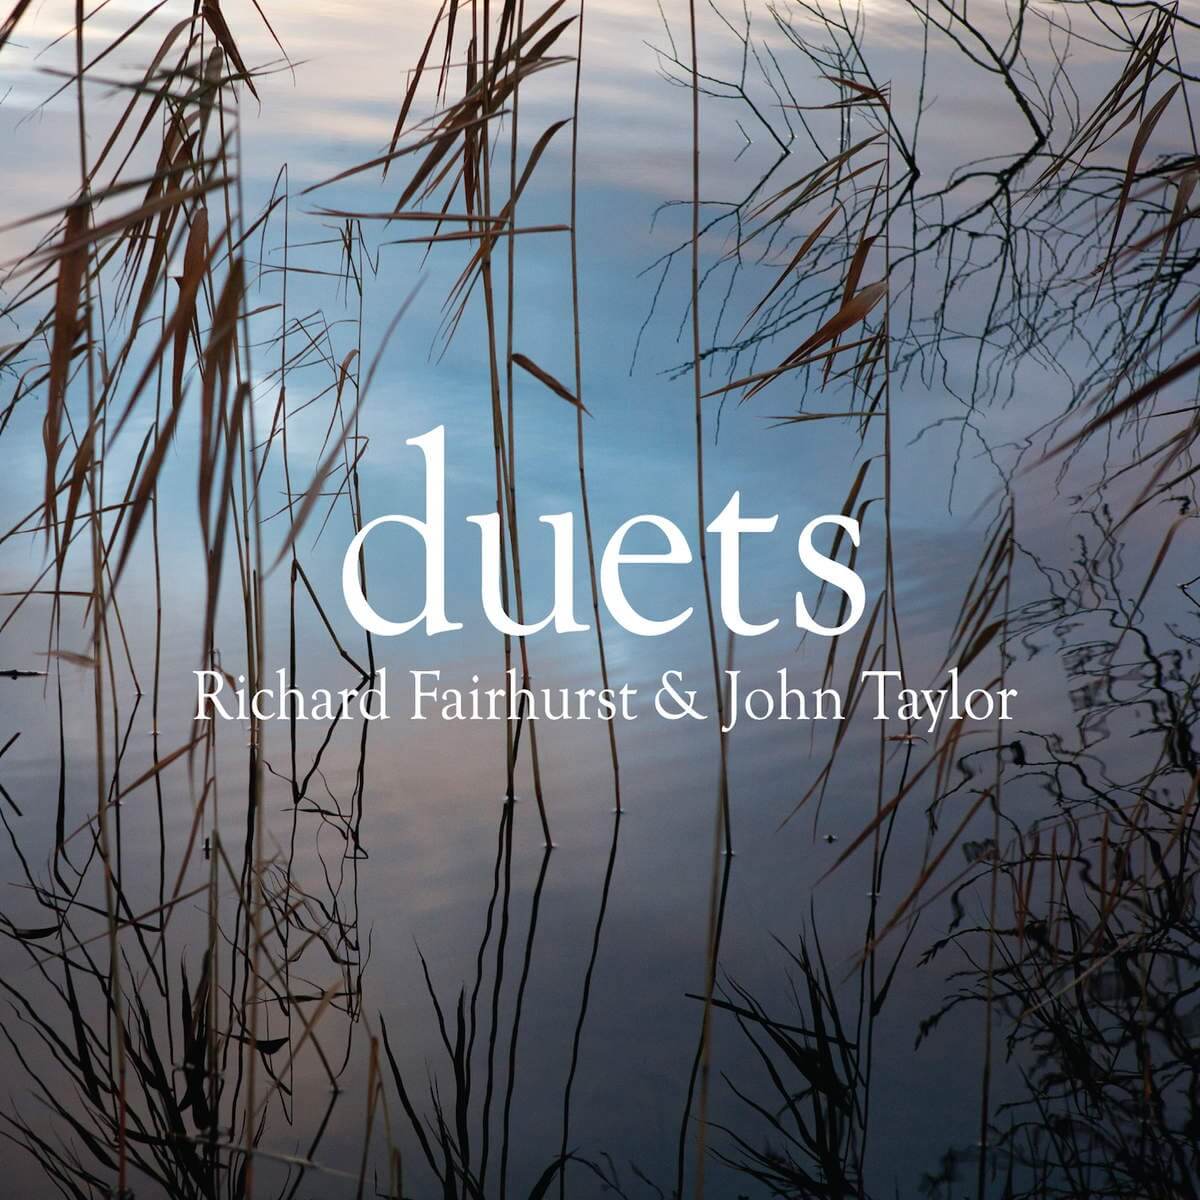 Richard Fairhurst and John Taylor "Duets"